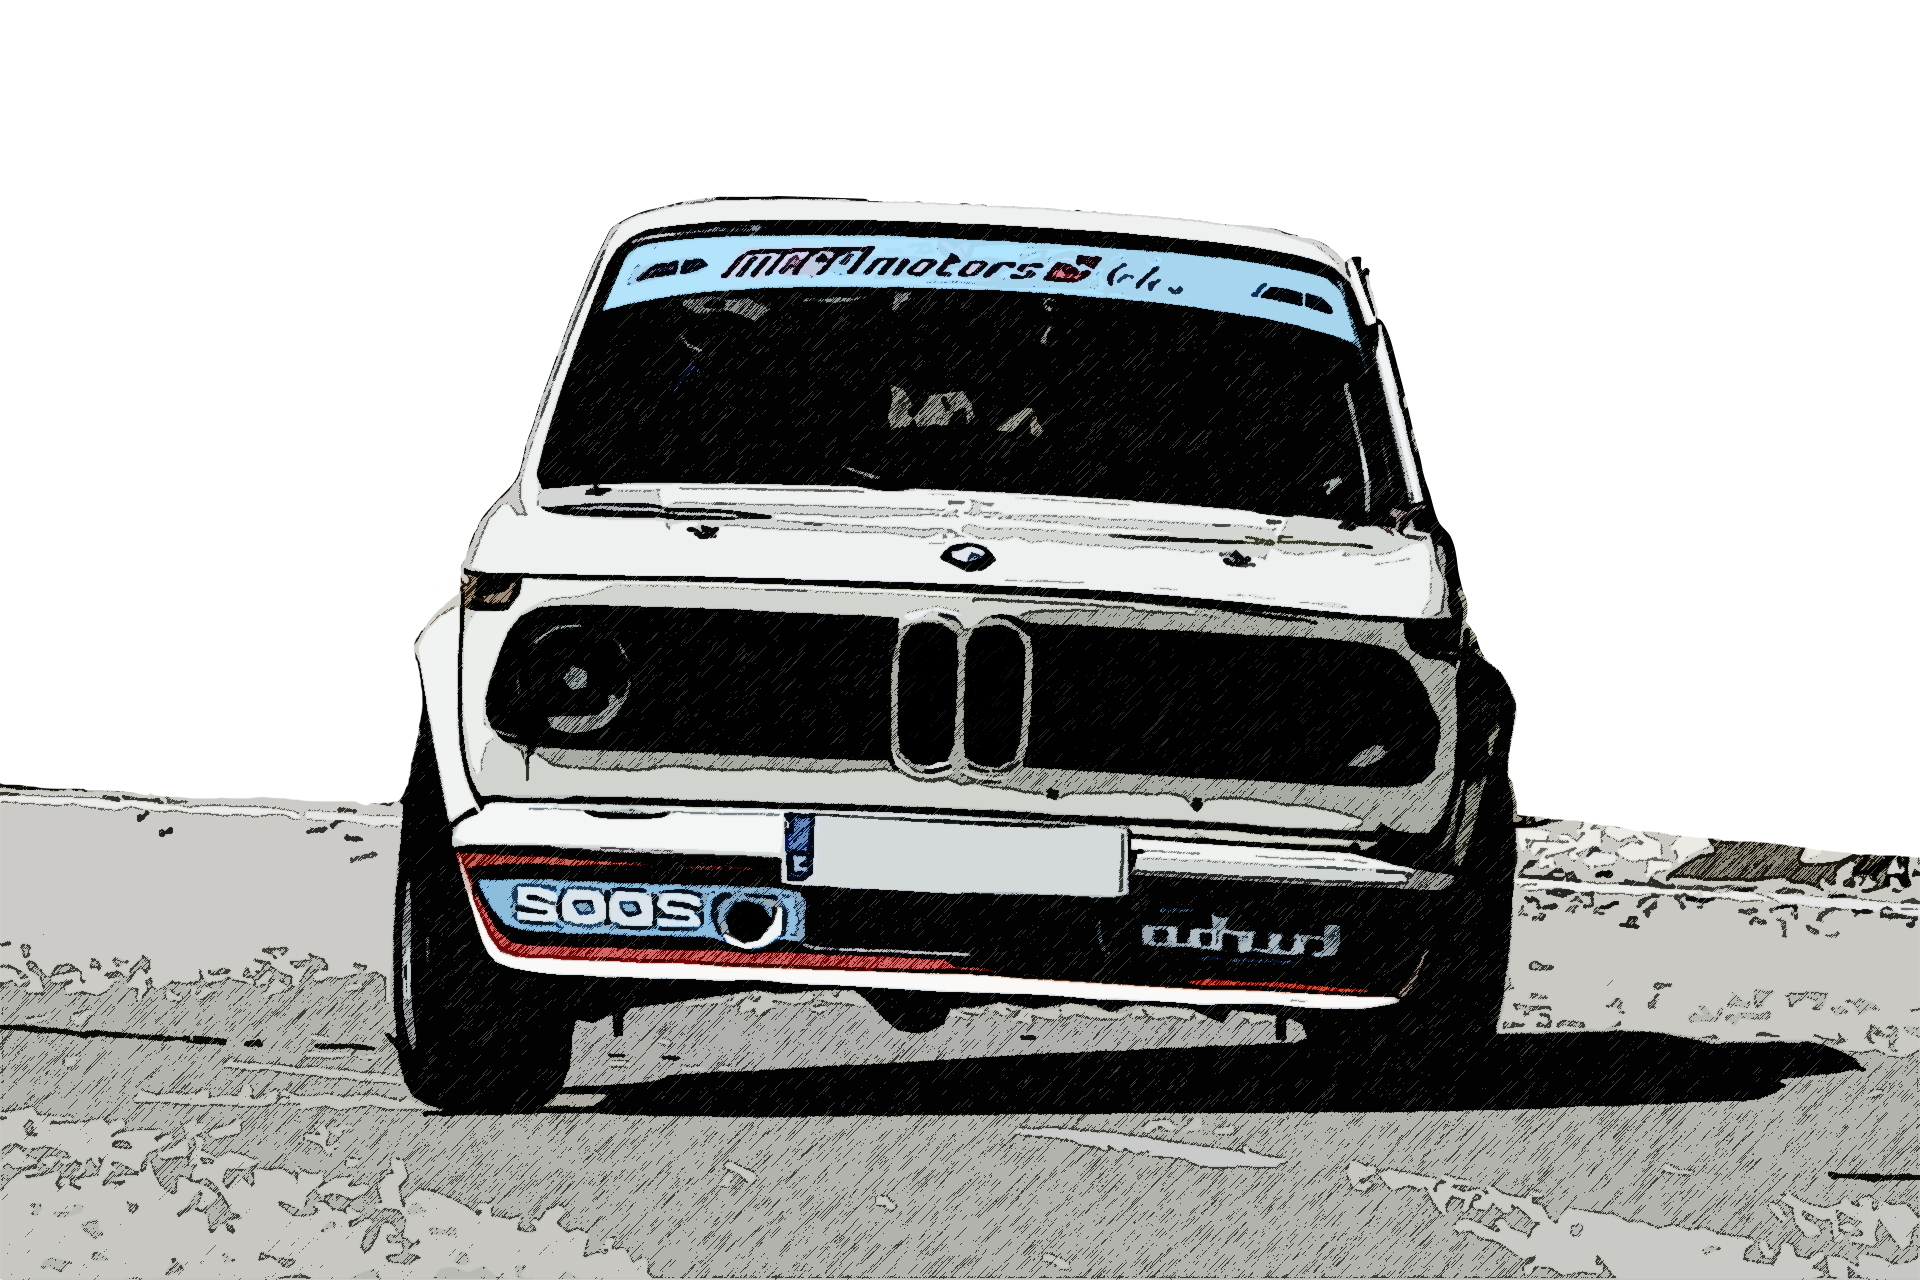 BMW2002 Turbo